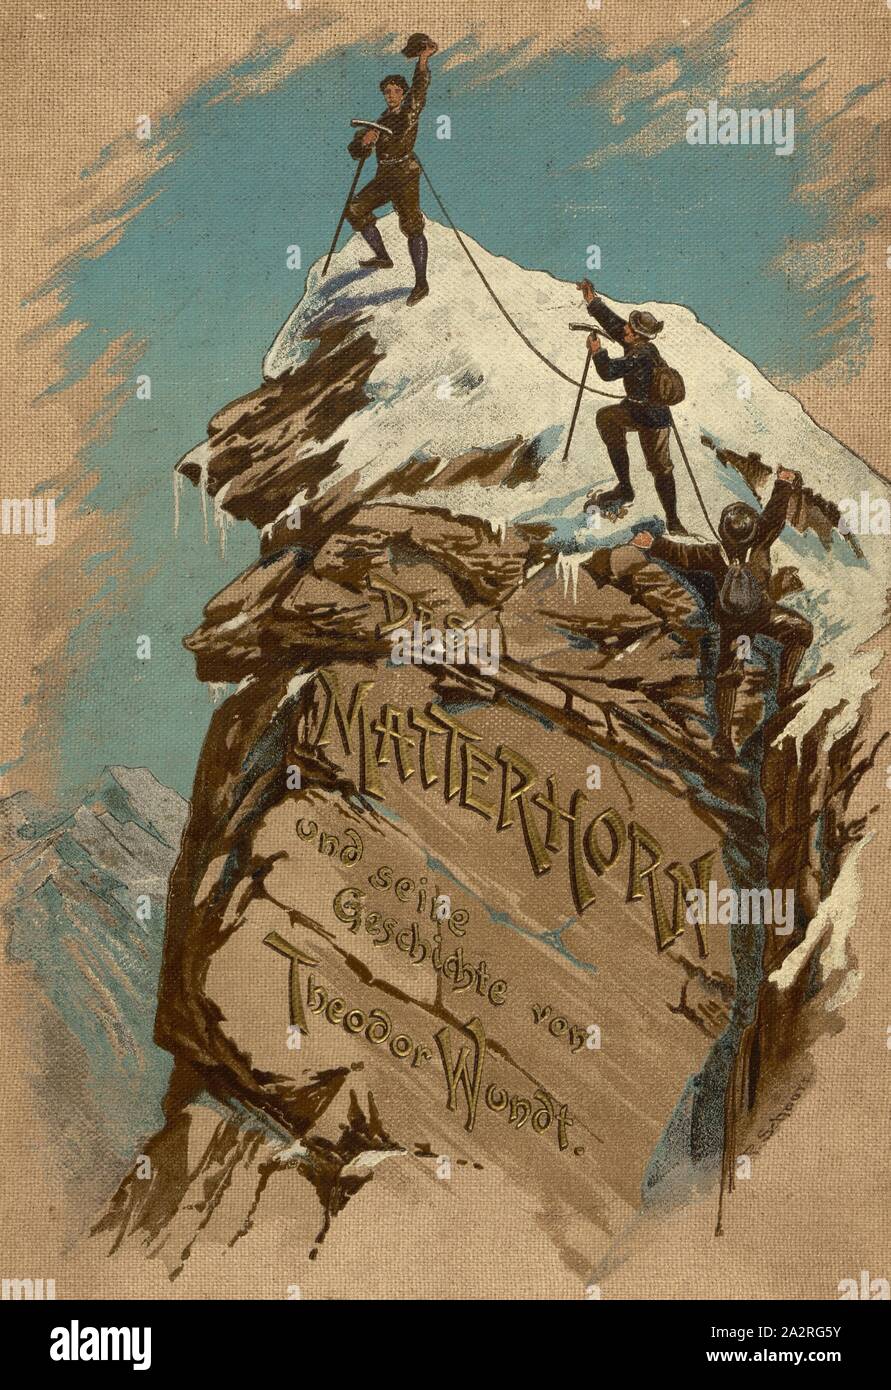 The Matterhorn and its history, Climber on the top of the Matterhorn, cover, Theodor Wundt: Das Matterhorn und seine Geschichte. Berlin: Raimund Mitscher, [1896 Stock Photo